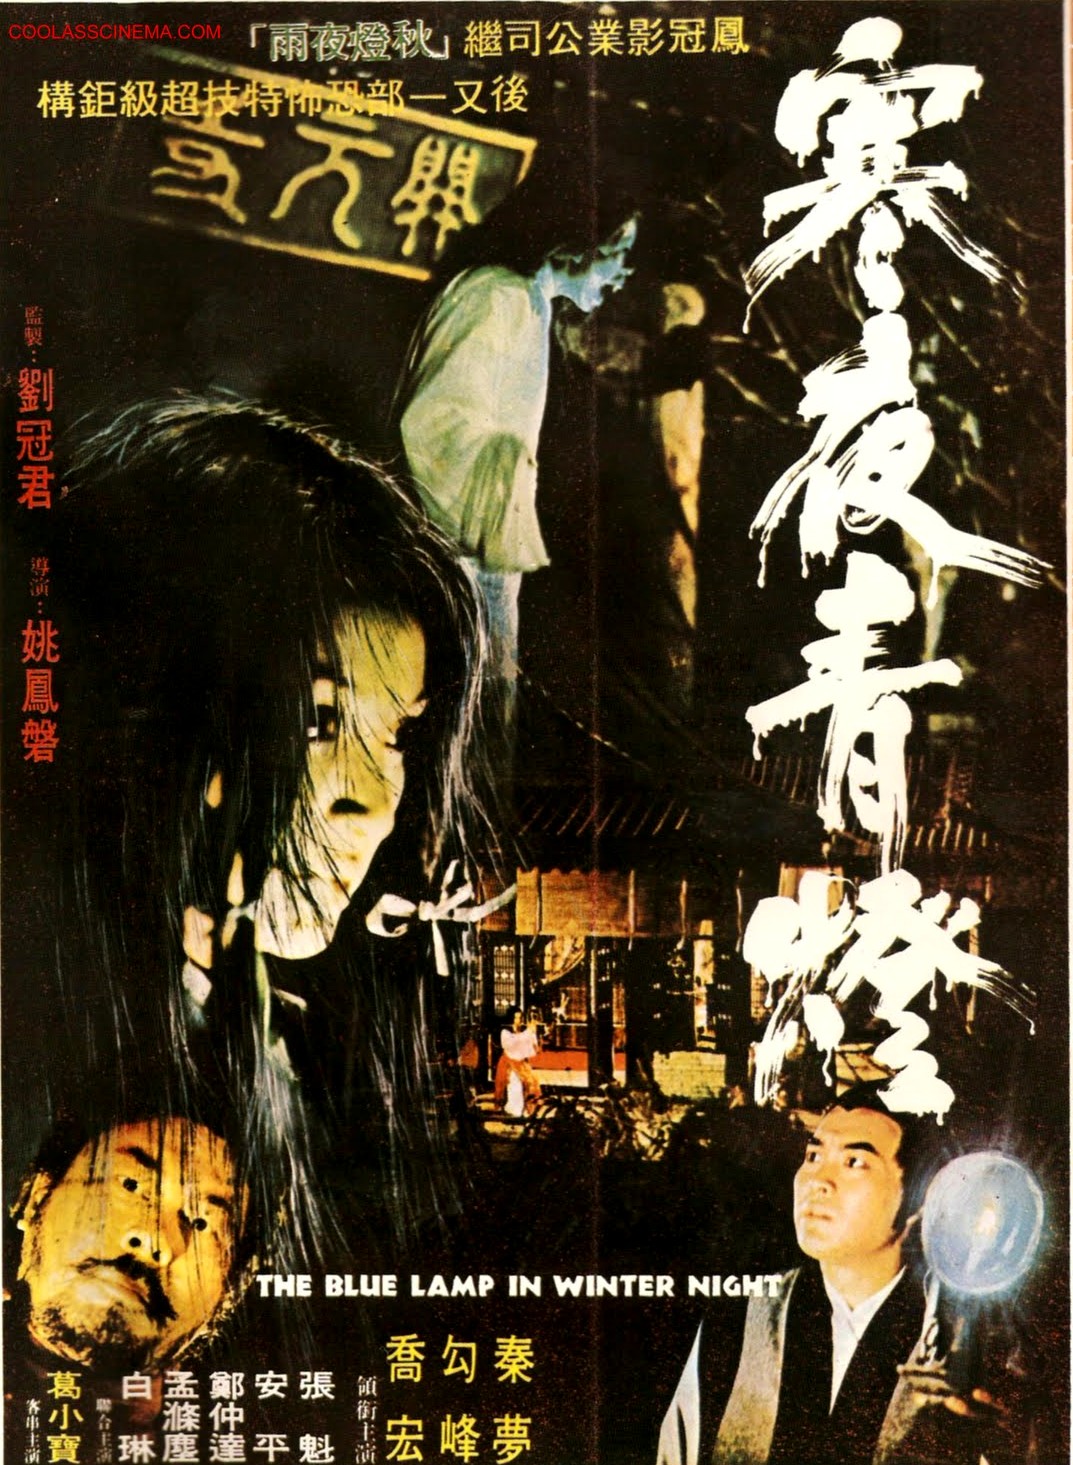 寒夜青燈(1974年台灣姚鳳磐執導電影)